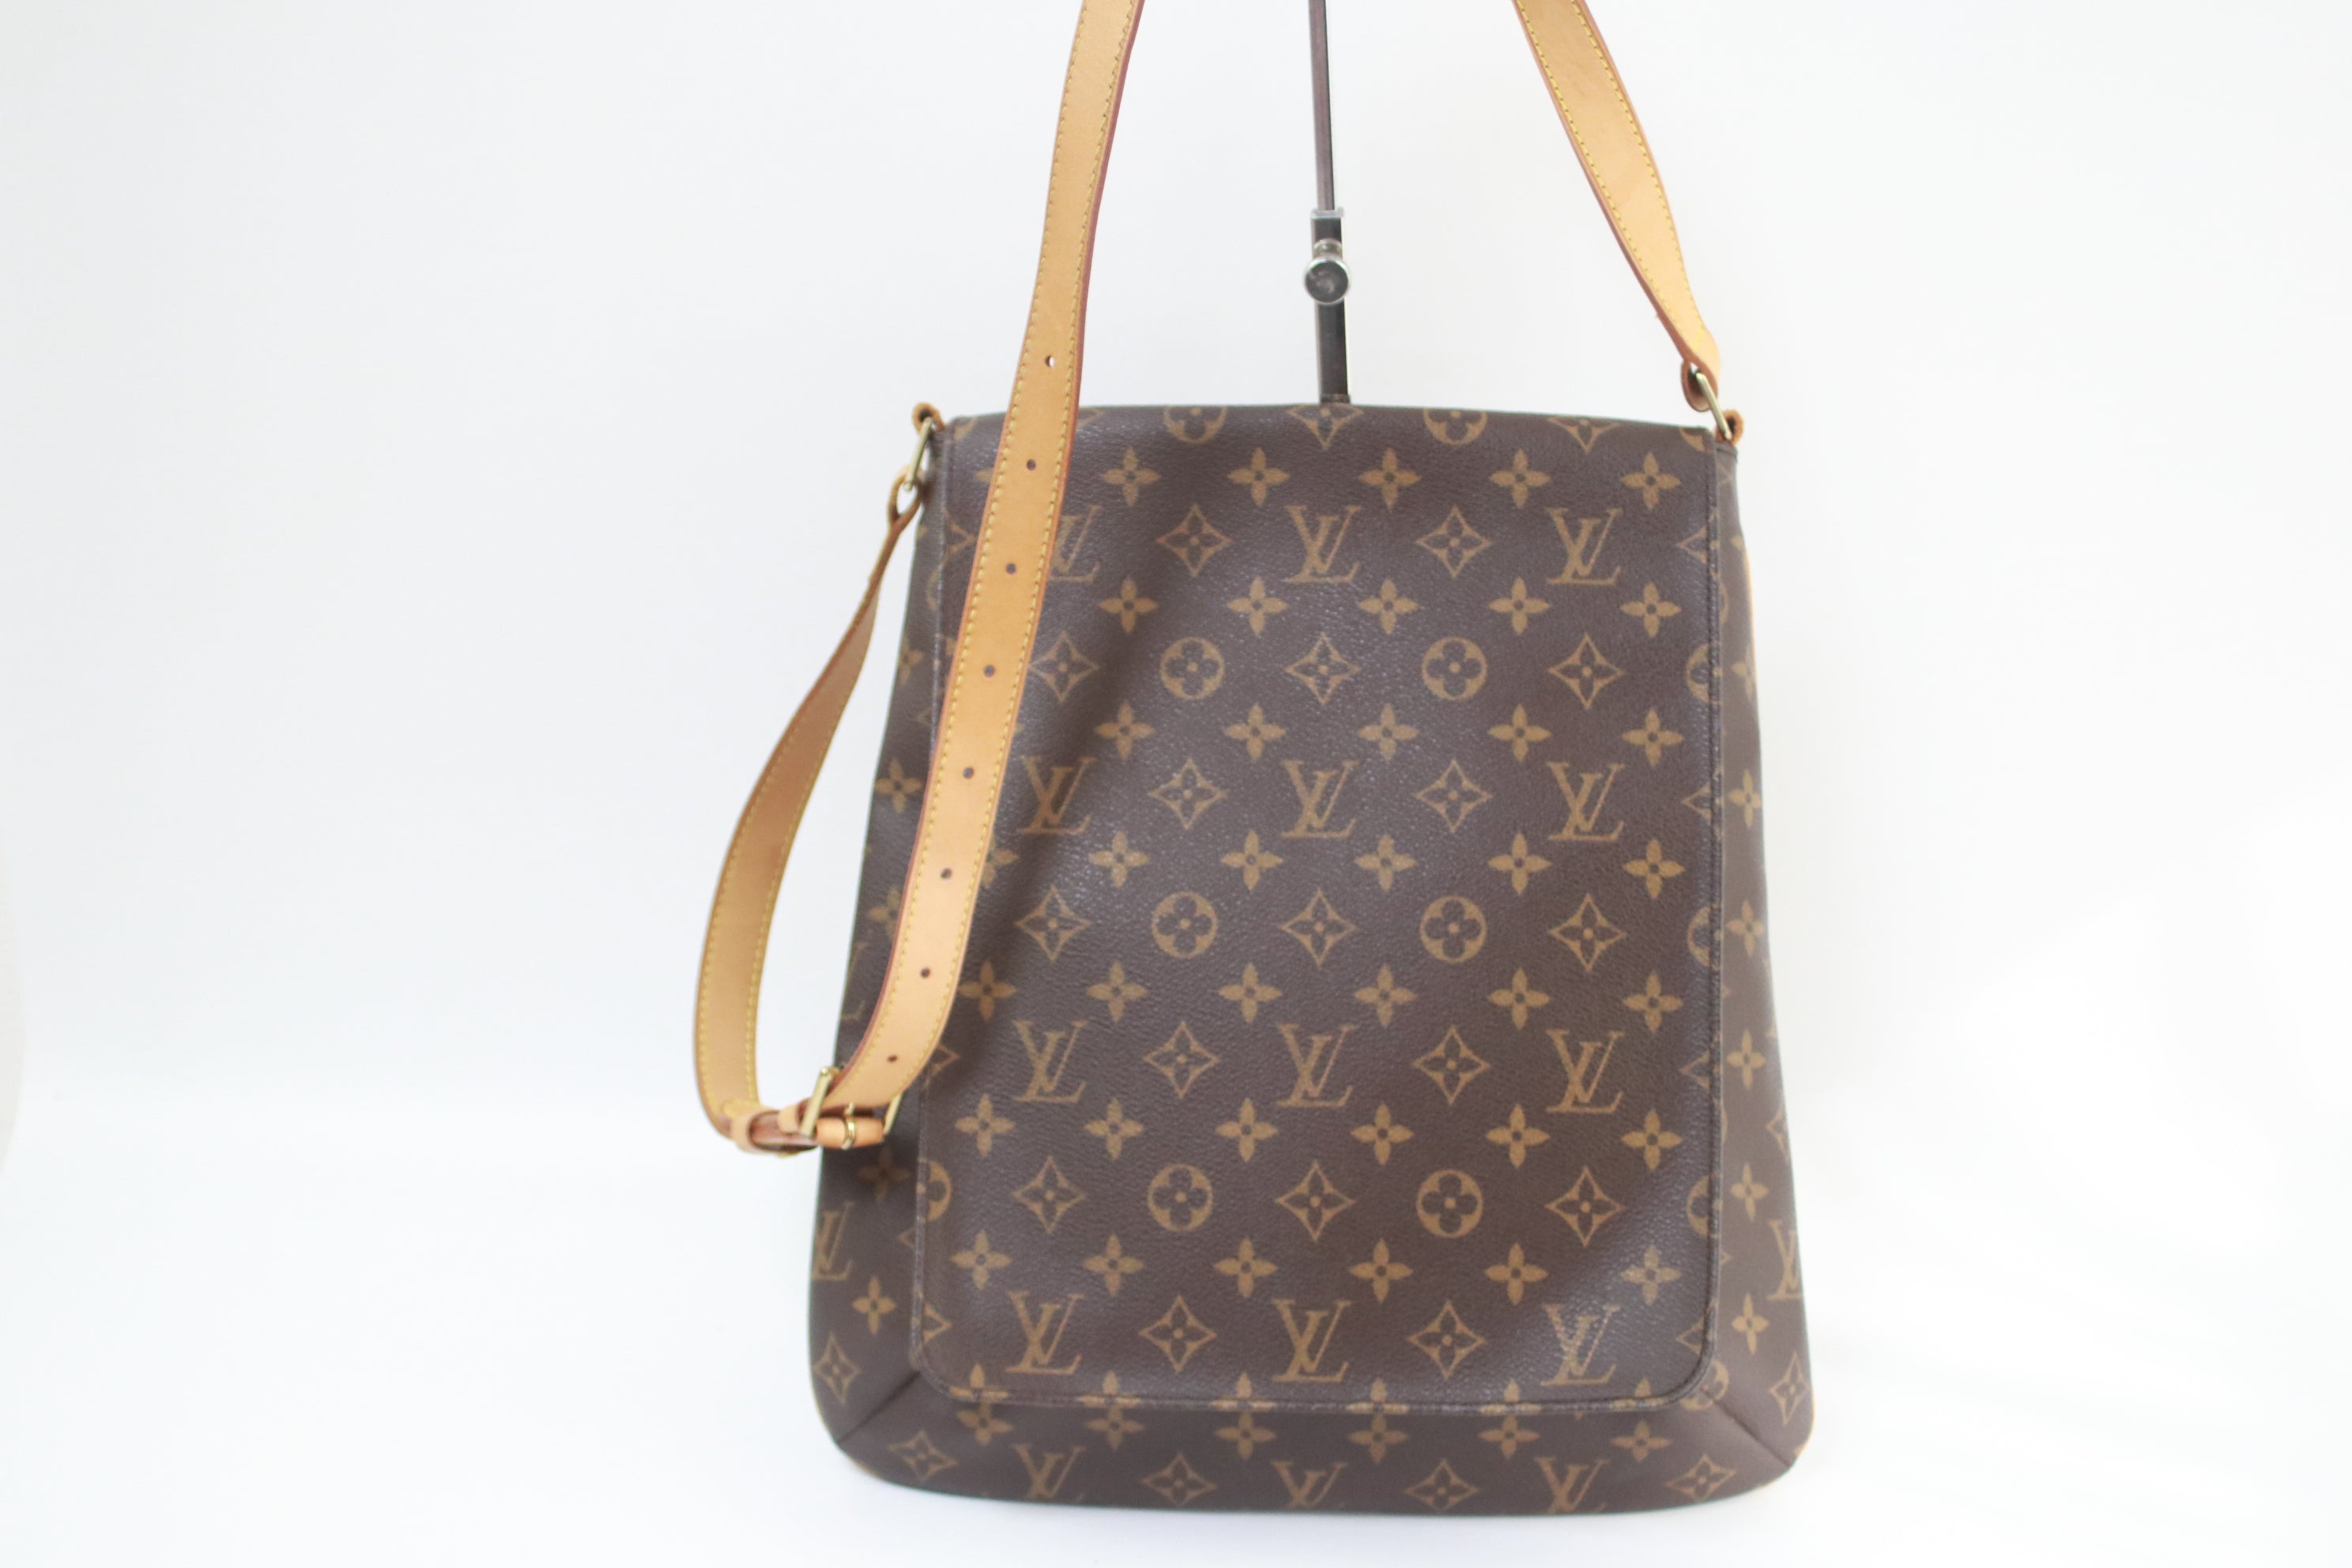 Louis Vuitton Musette GM Shoulder Bag